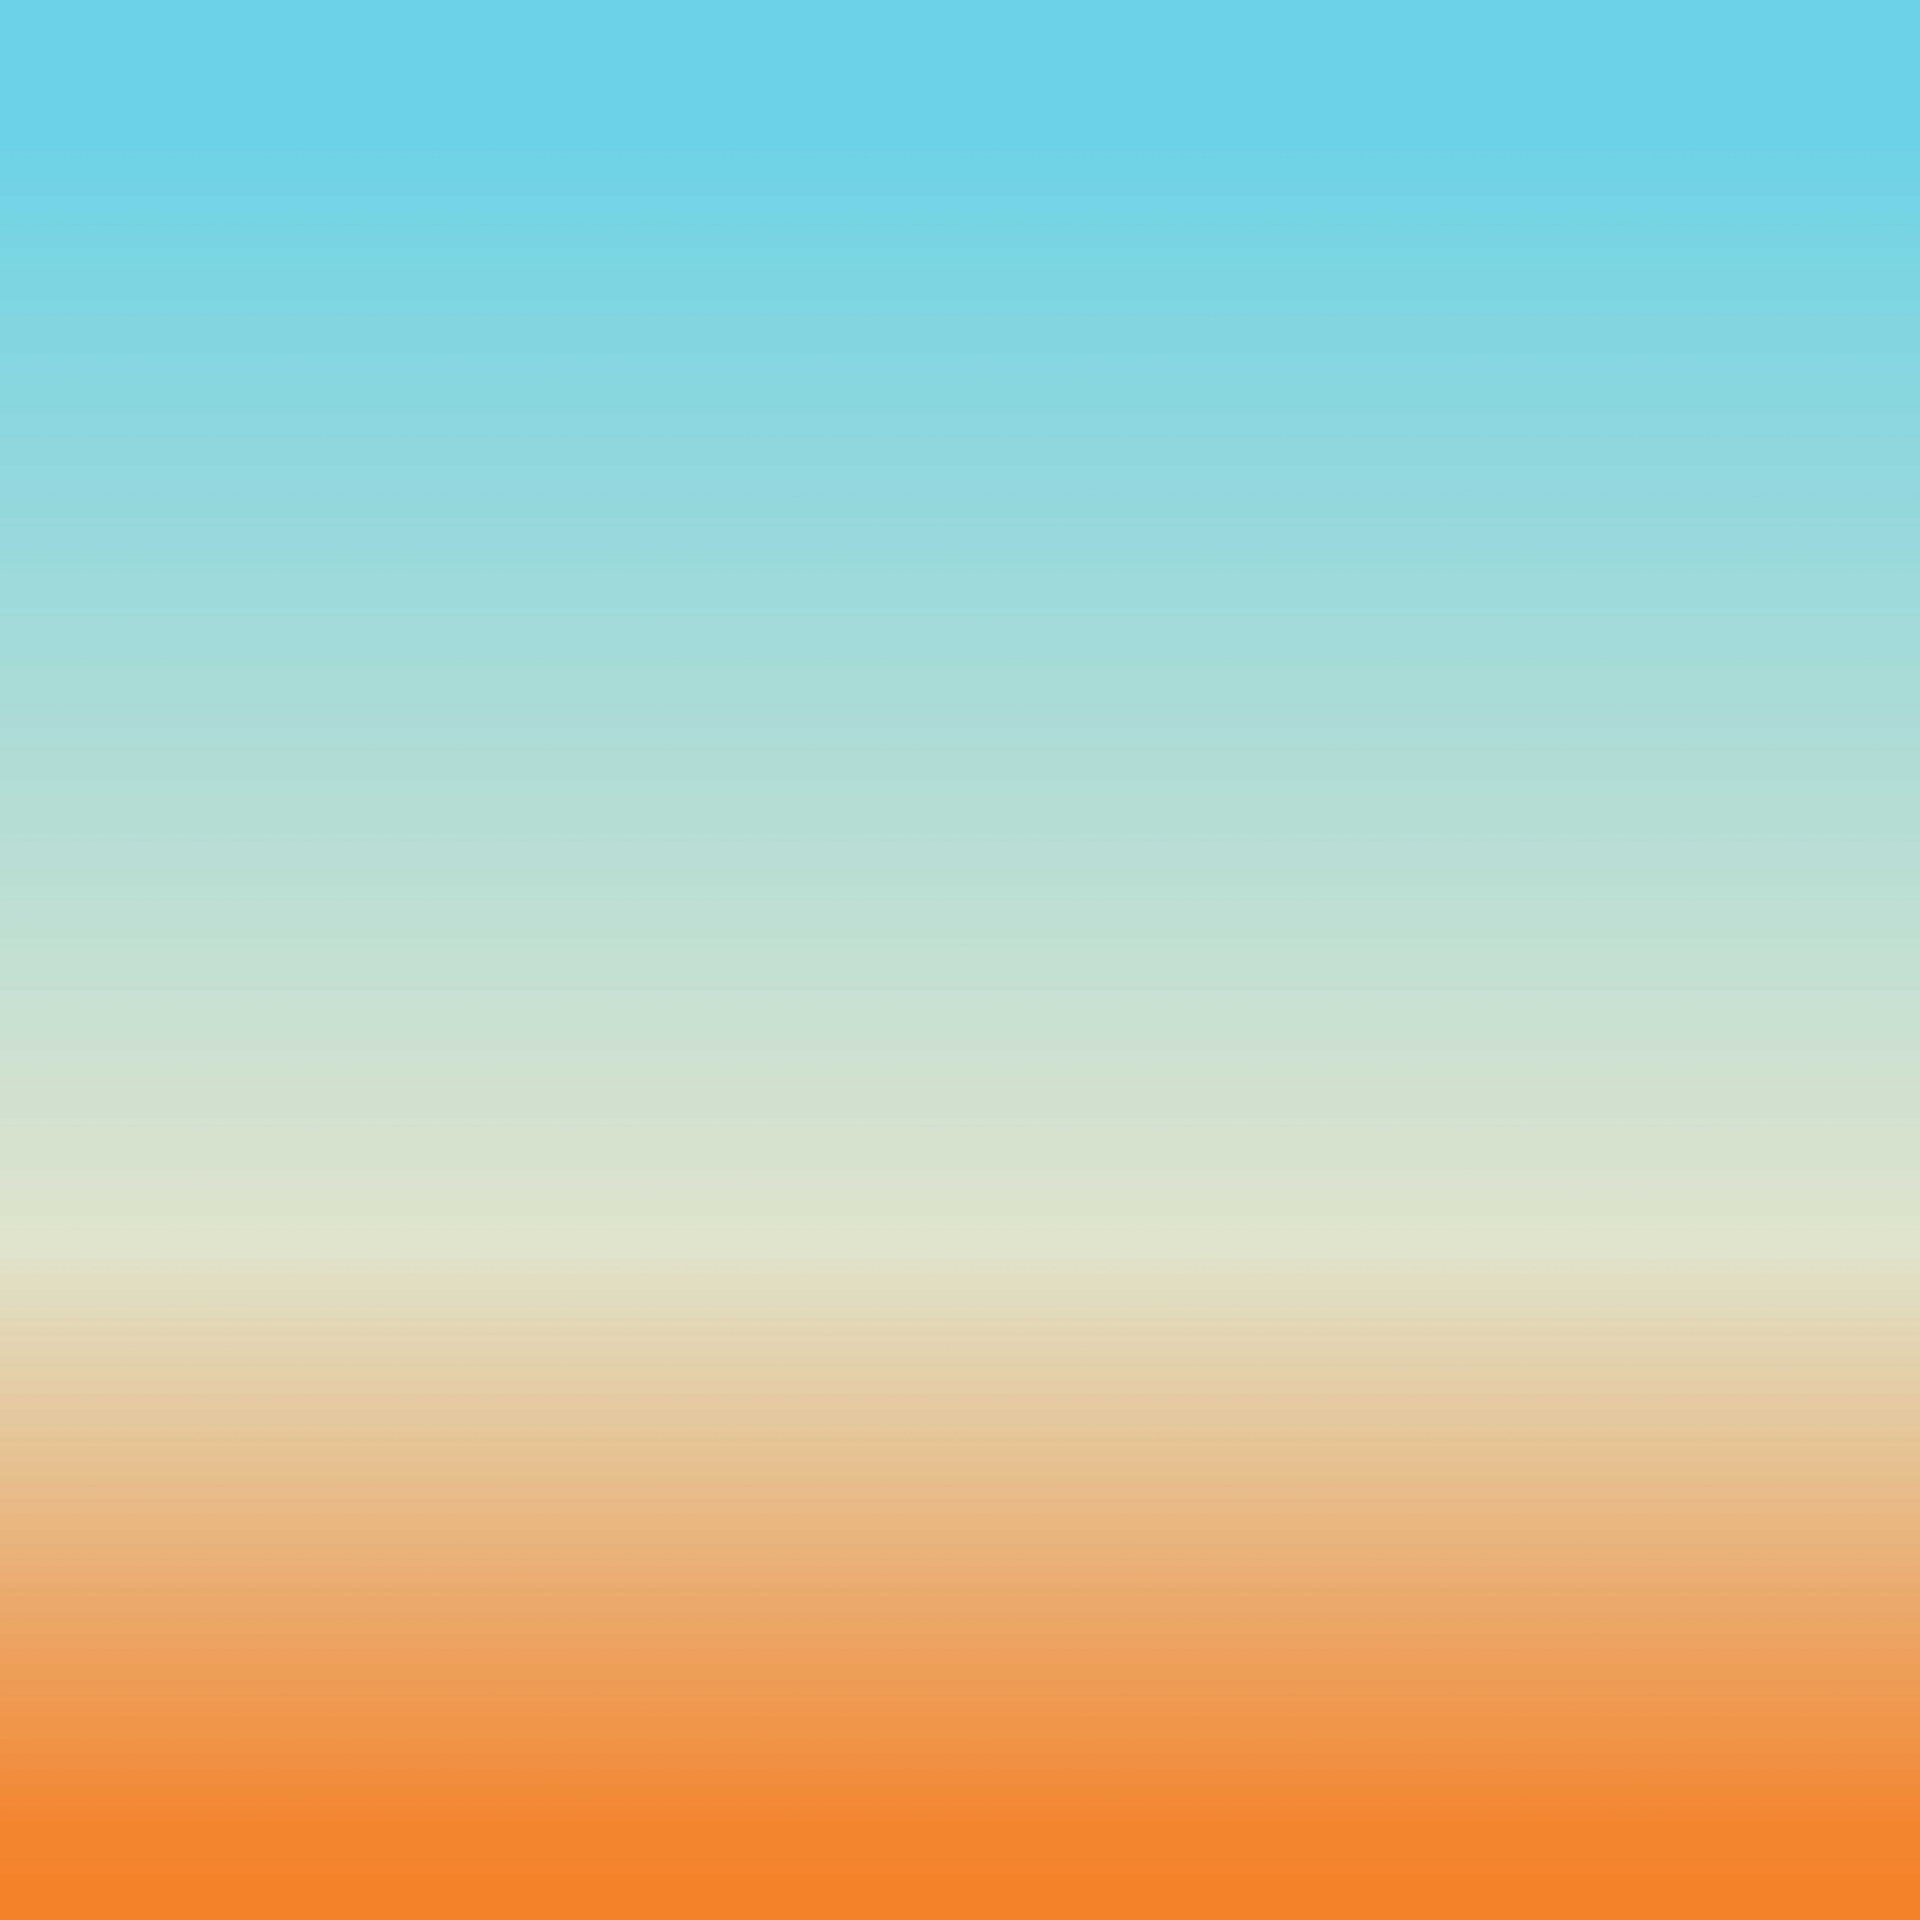 gradient orange horizontal free photo